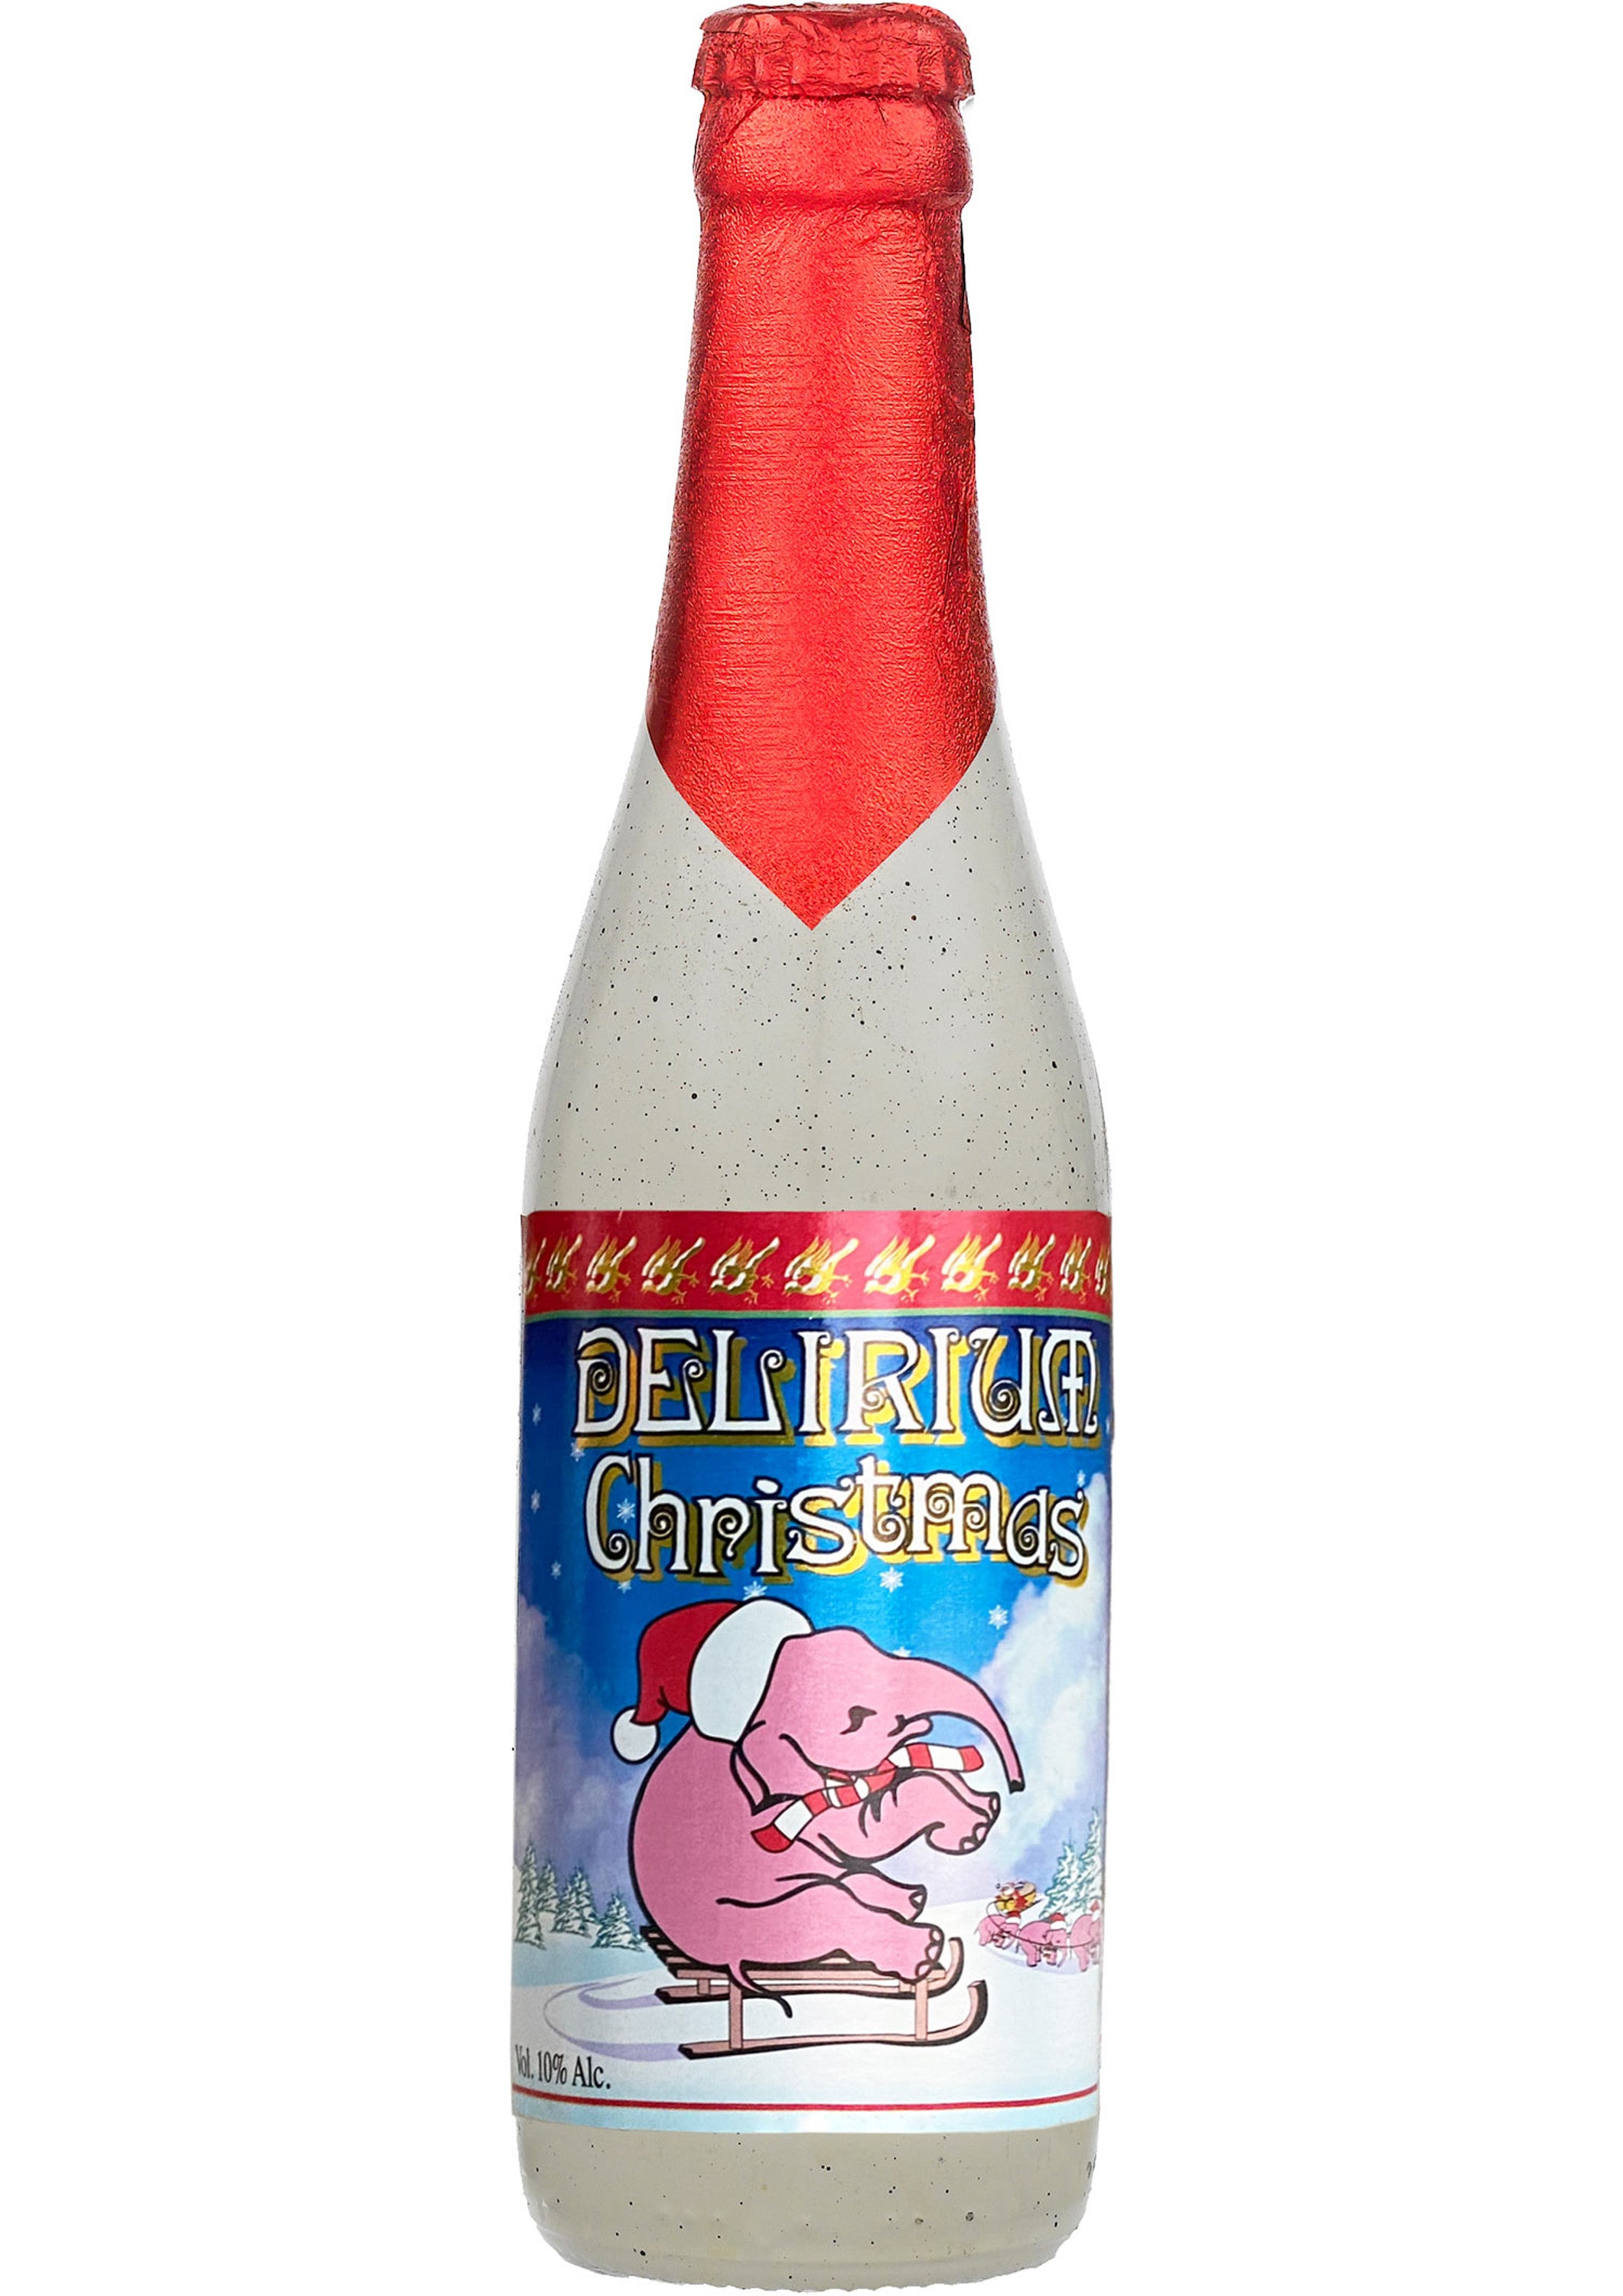 Delirium Noel - Christmas Bier aus Belgien mit 10% Vol. - Weihnachtsbier